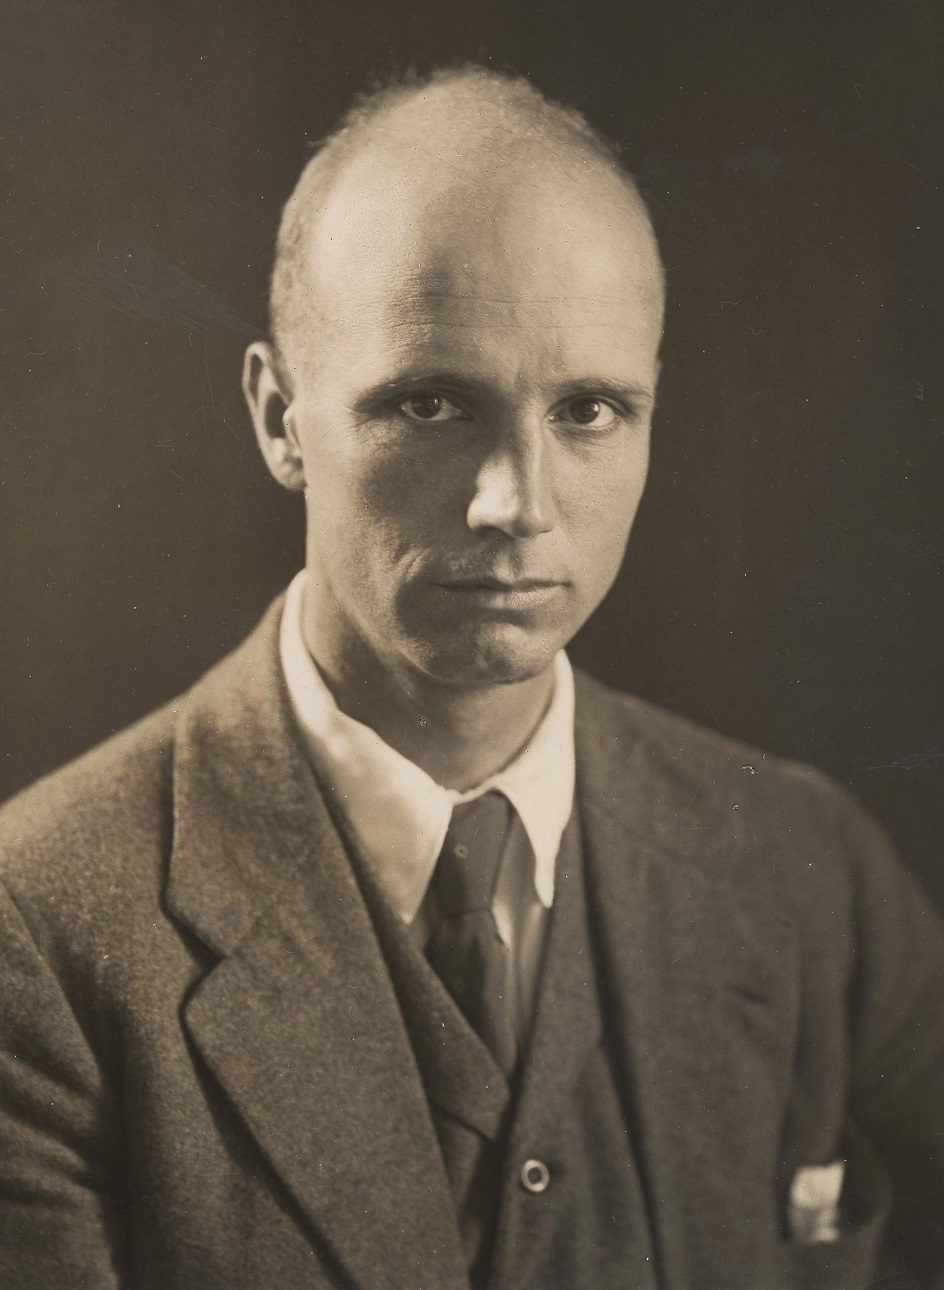 Рокуэлл Кент. Фотопортрет художника, ок. 1920